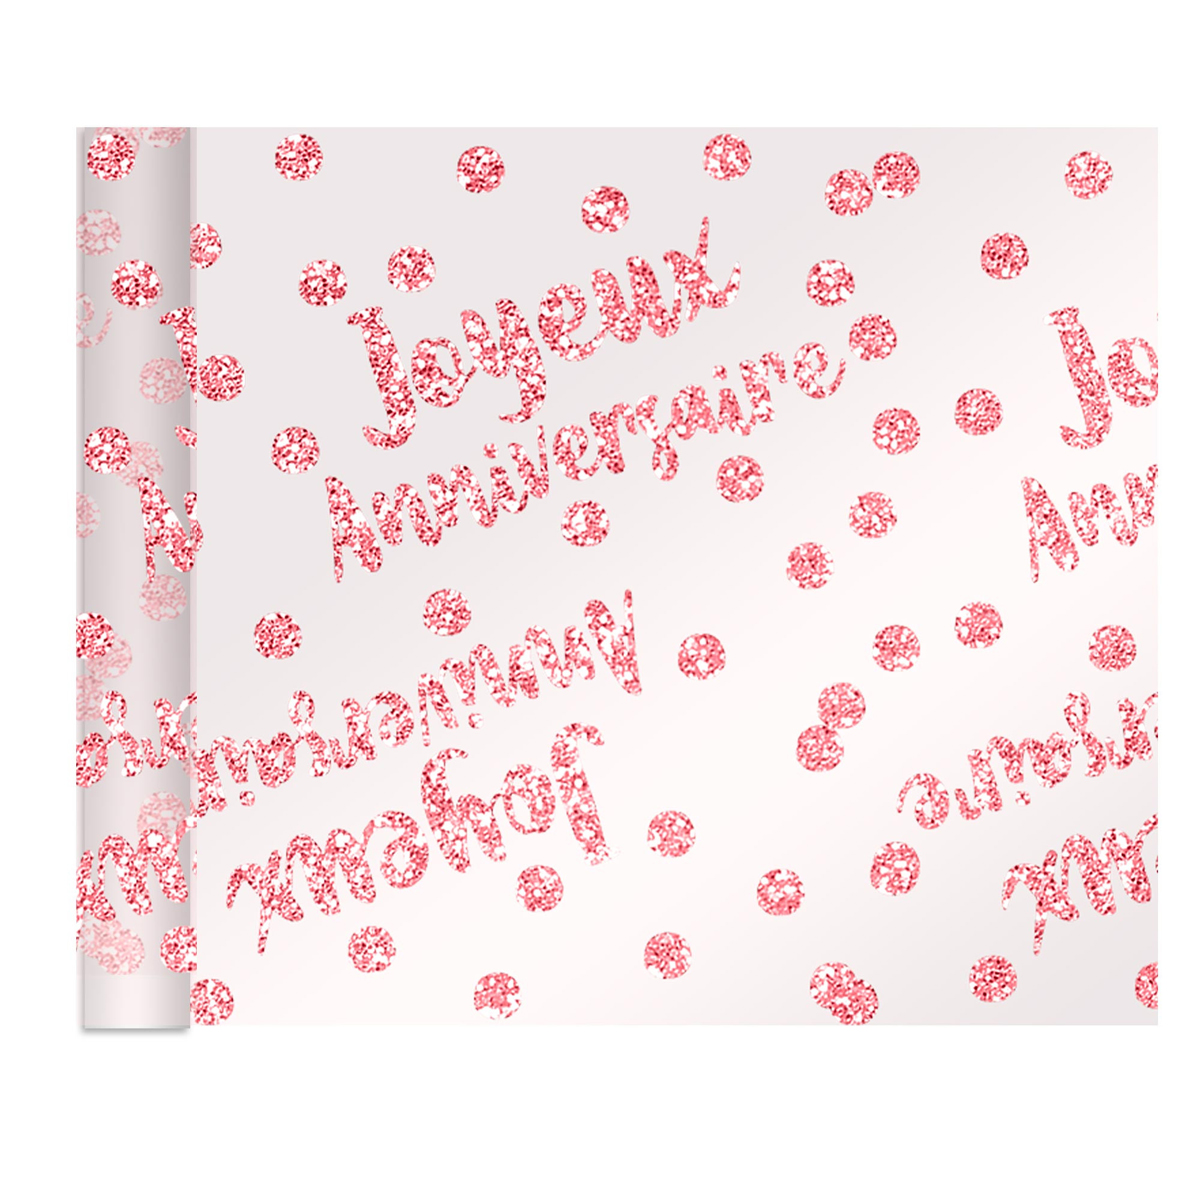 Chemin de table voile pailletté \'Joyeux Anniversaire\' rose blush - 4 m x 28 cm - [R2175]